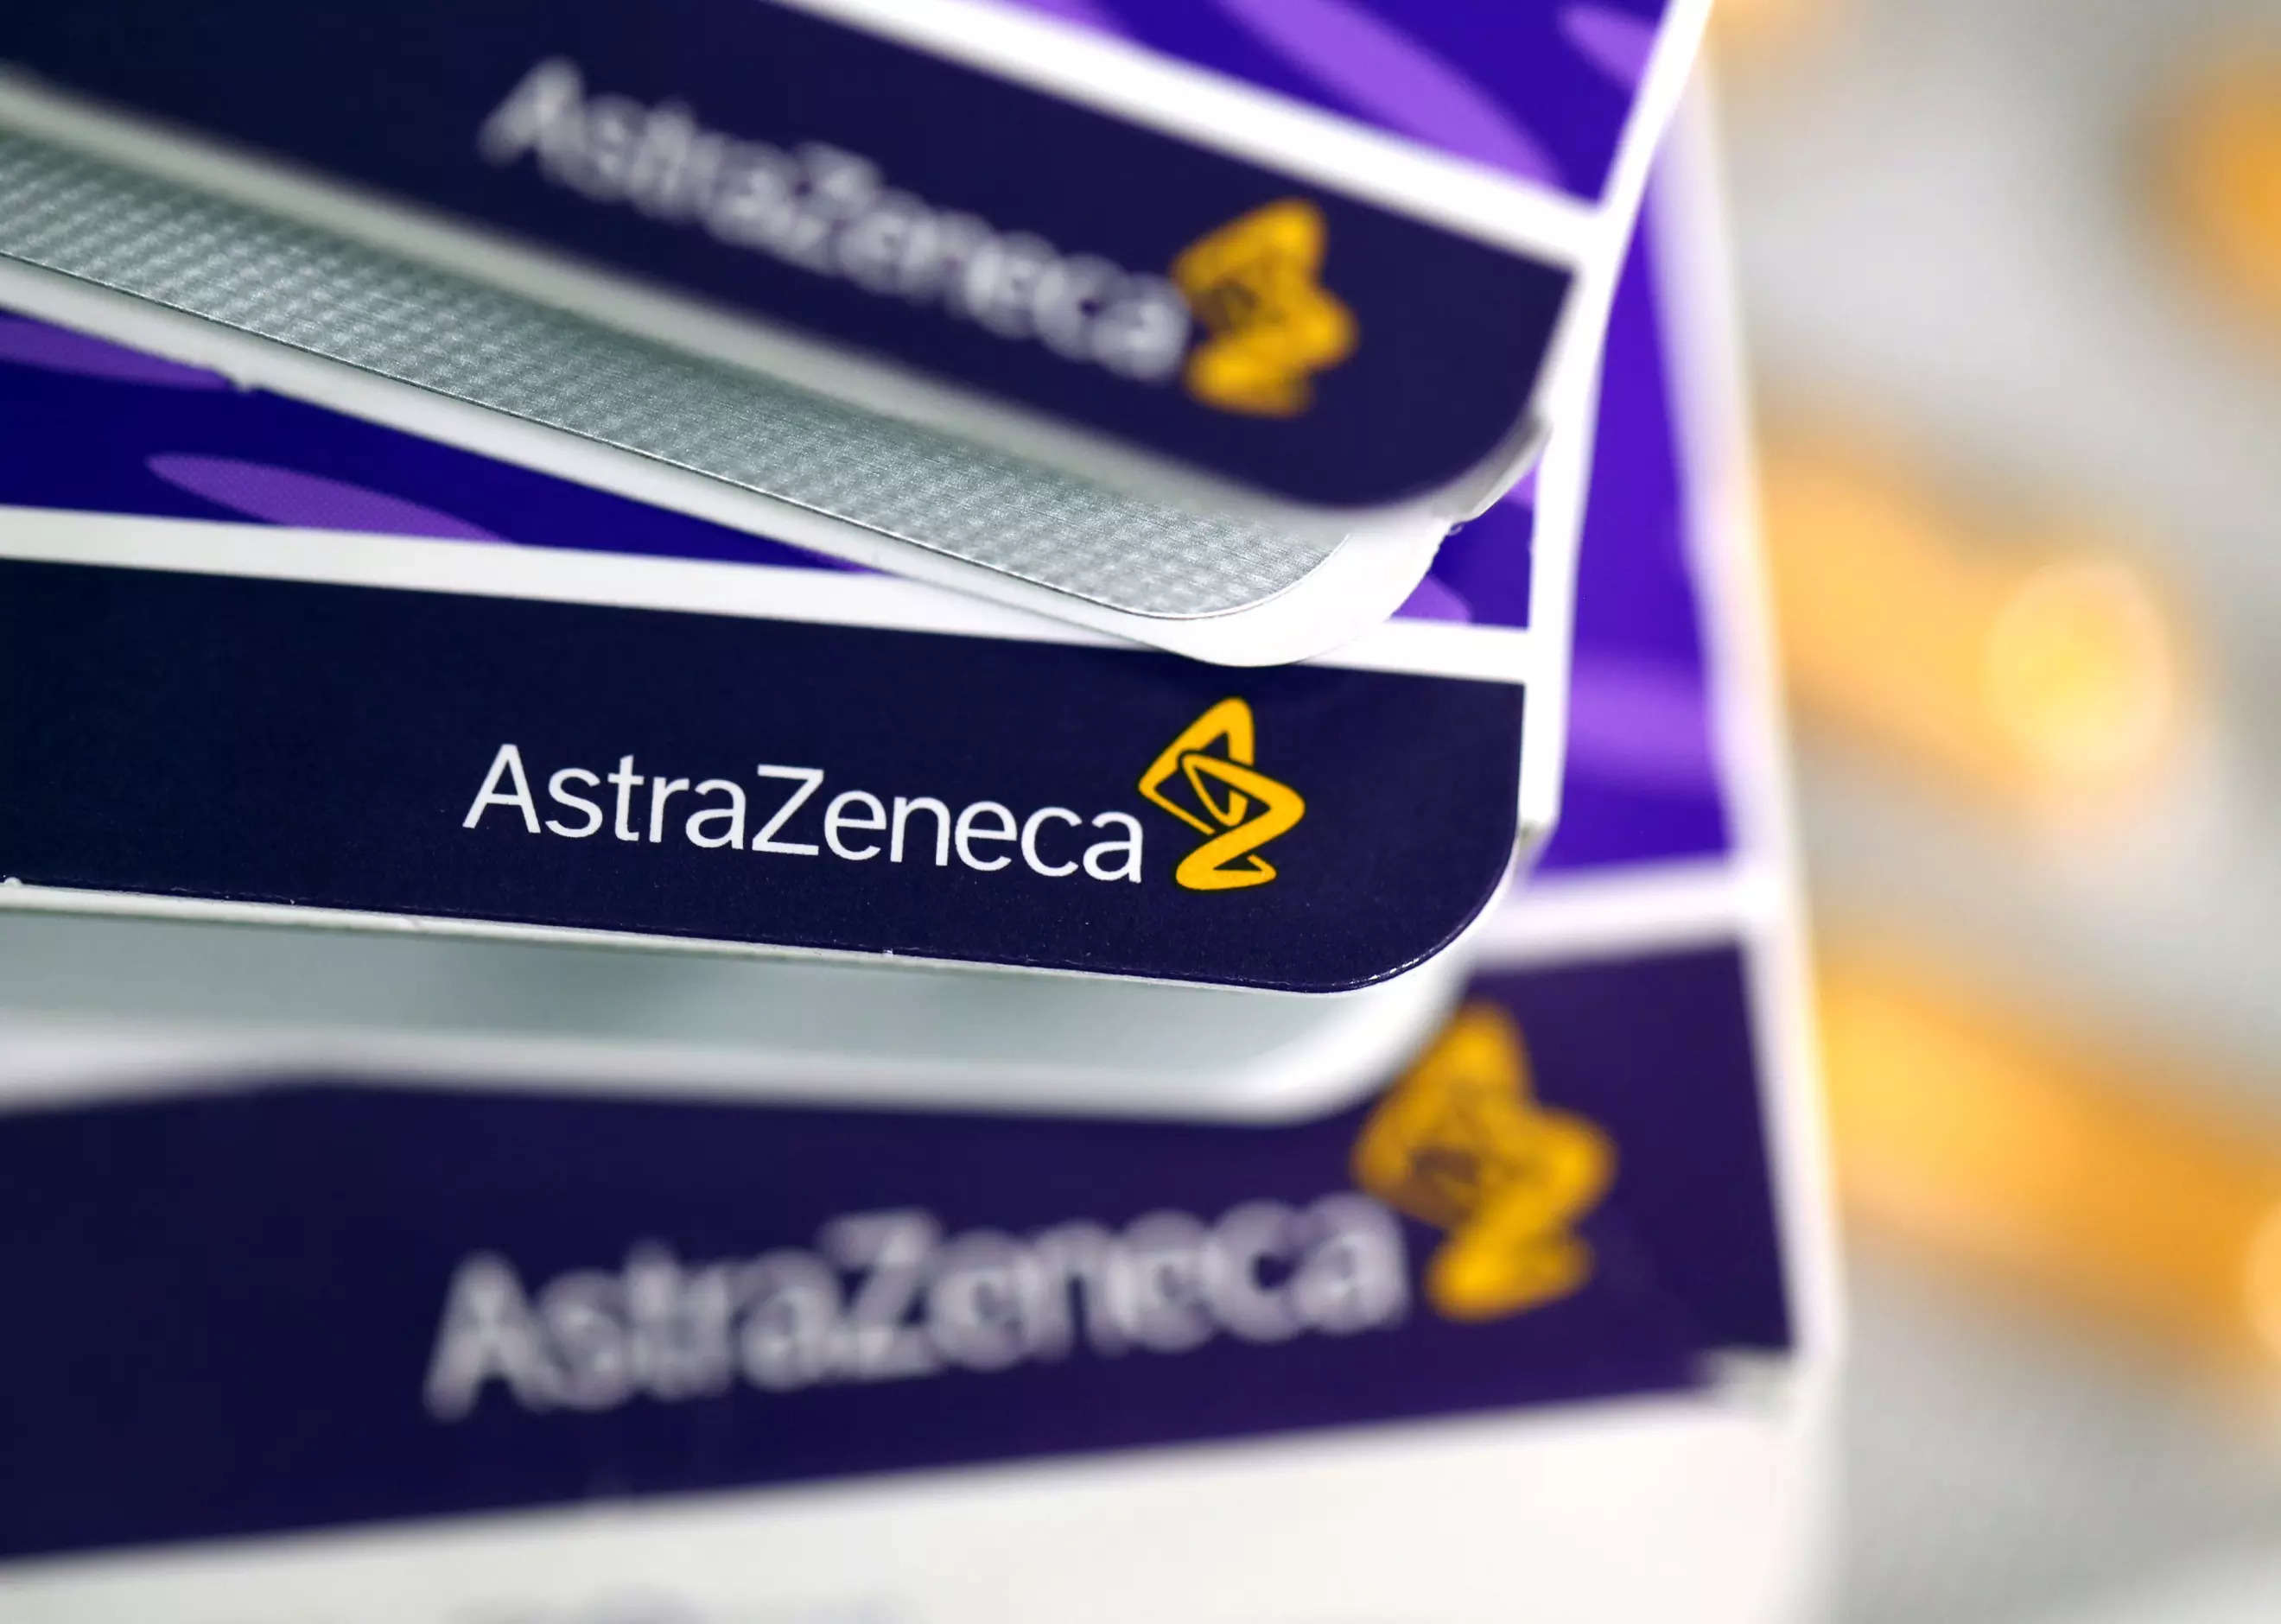 AstraZeneca's Farxiga cuts death risk in heart failure patients -study